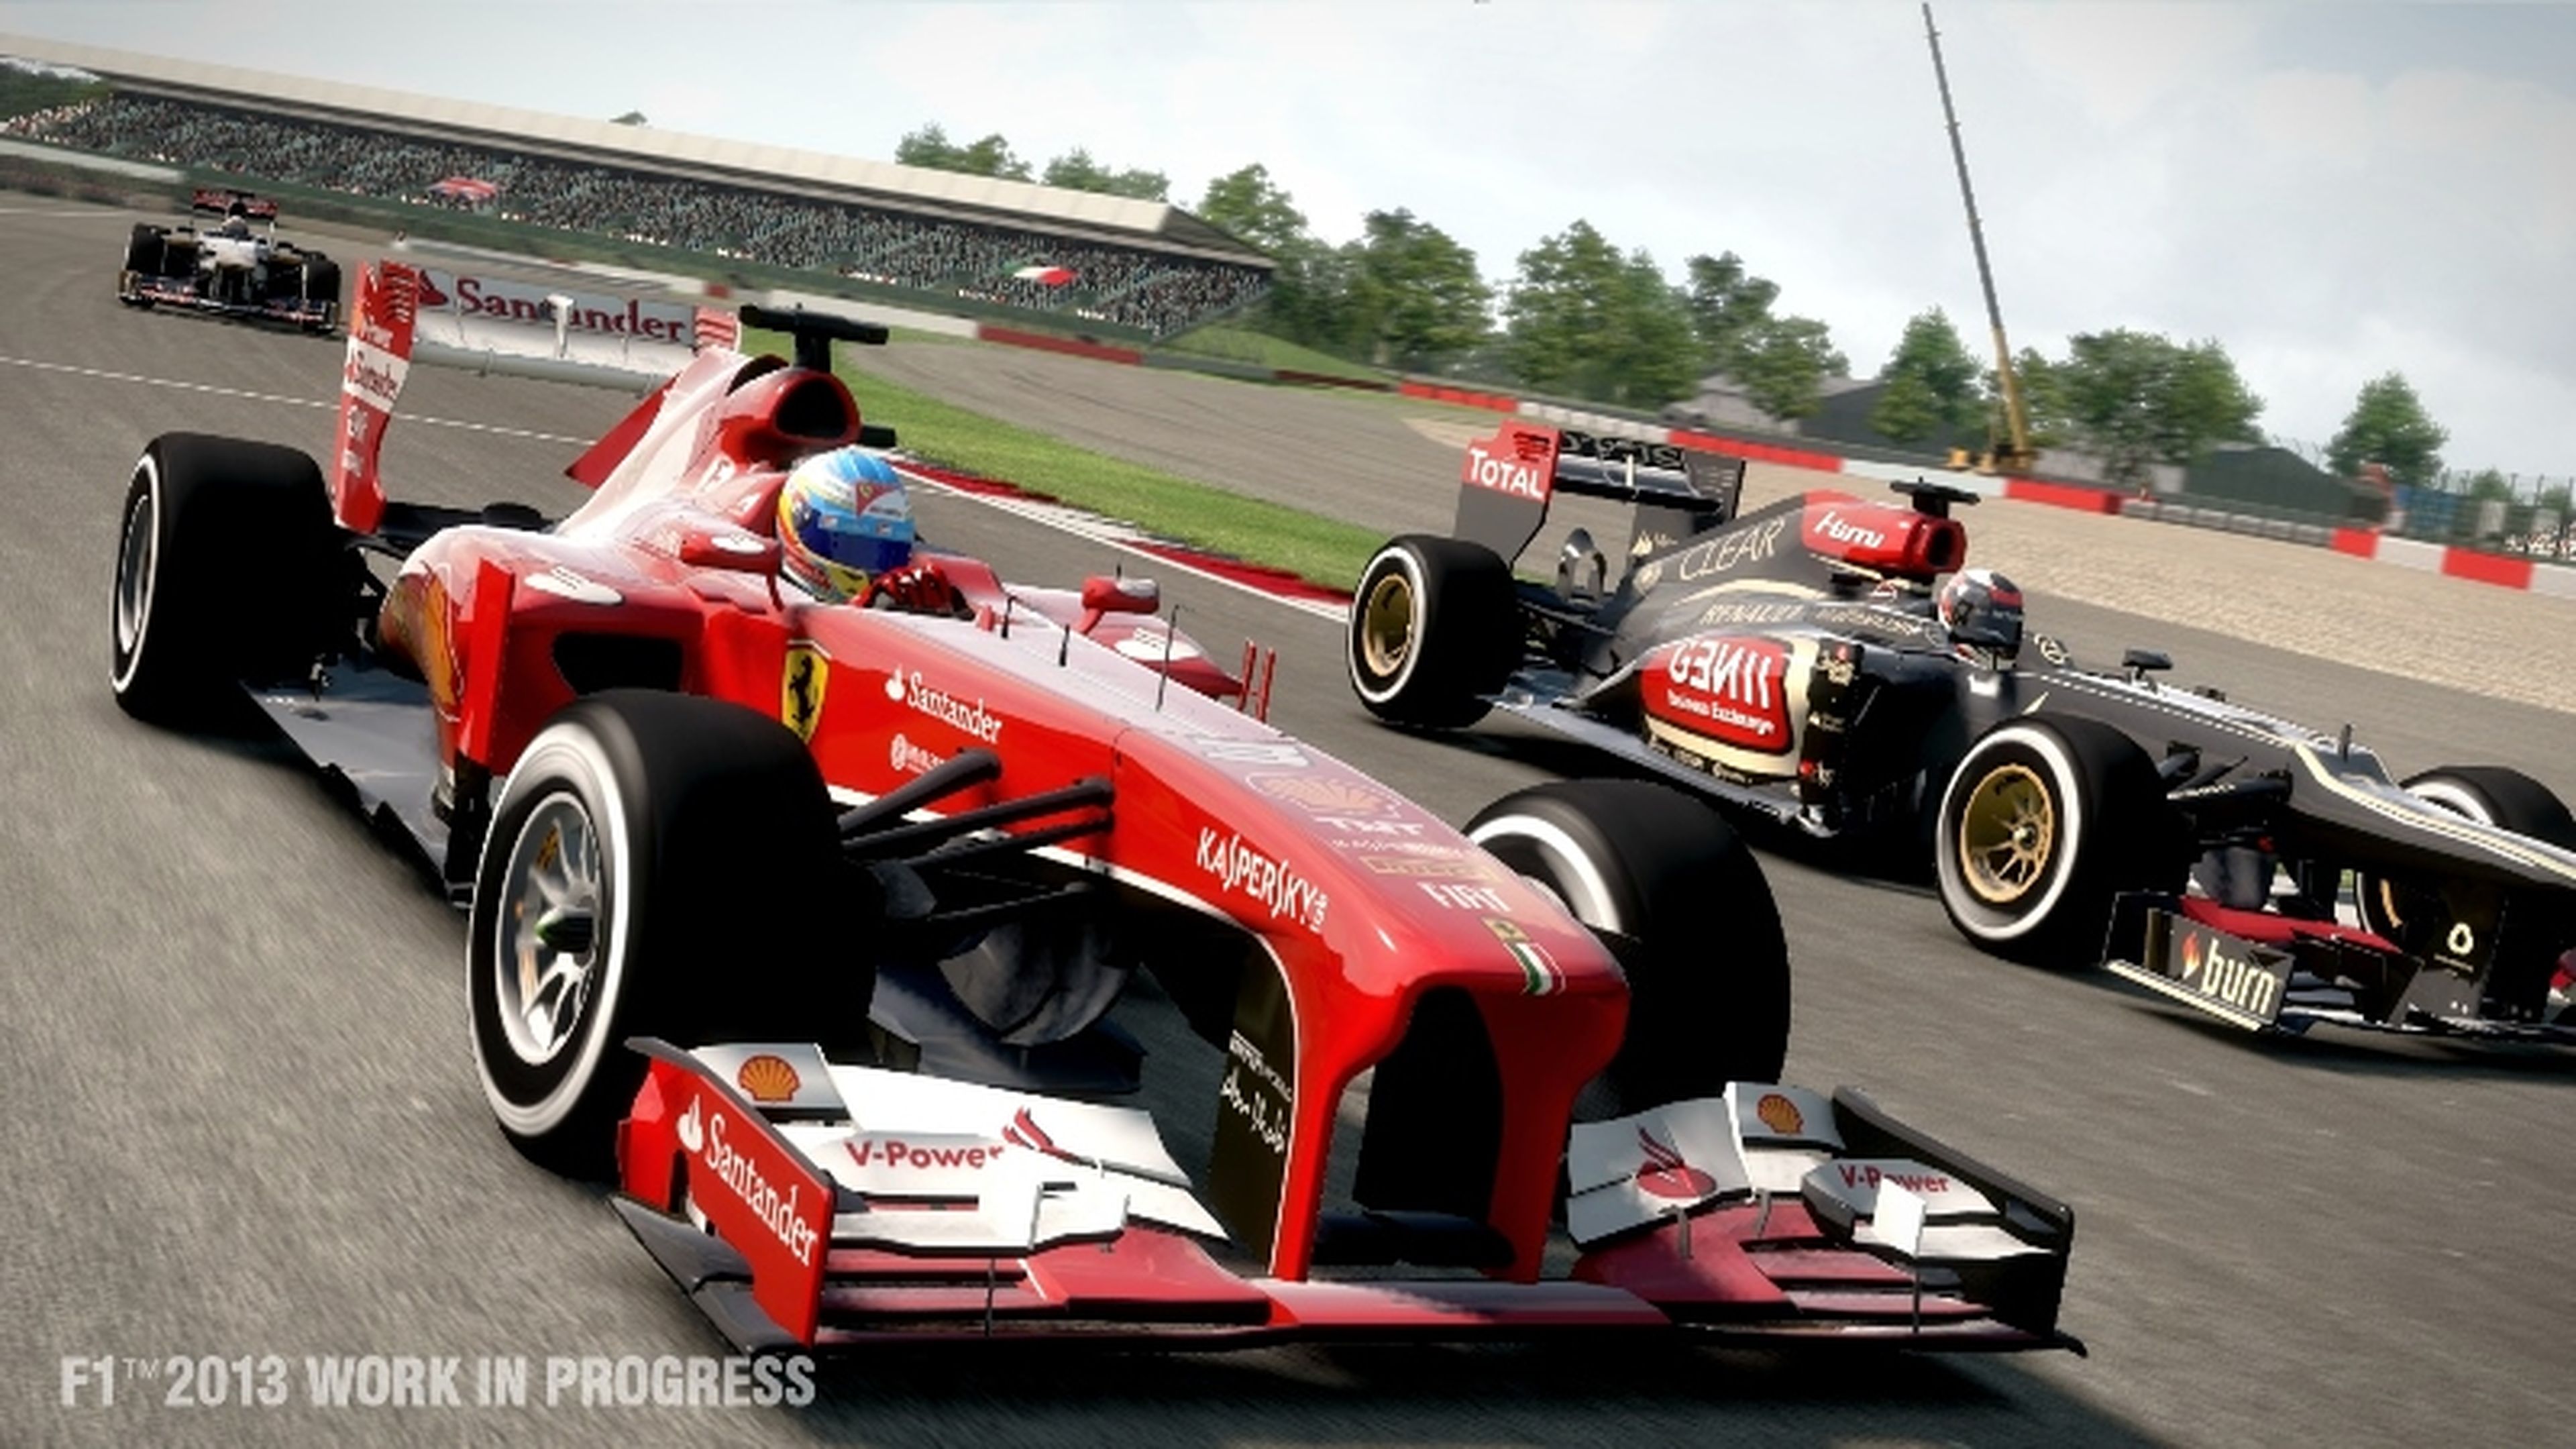 Gamescom 2013: Impresiones de F1 2013